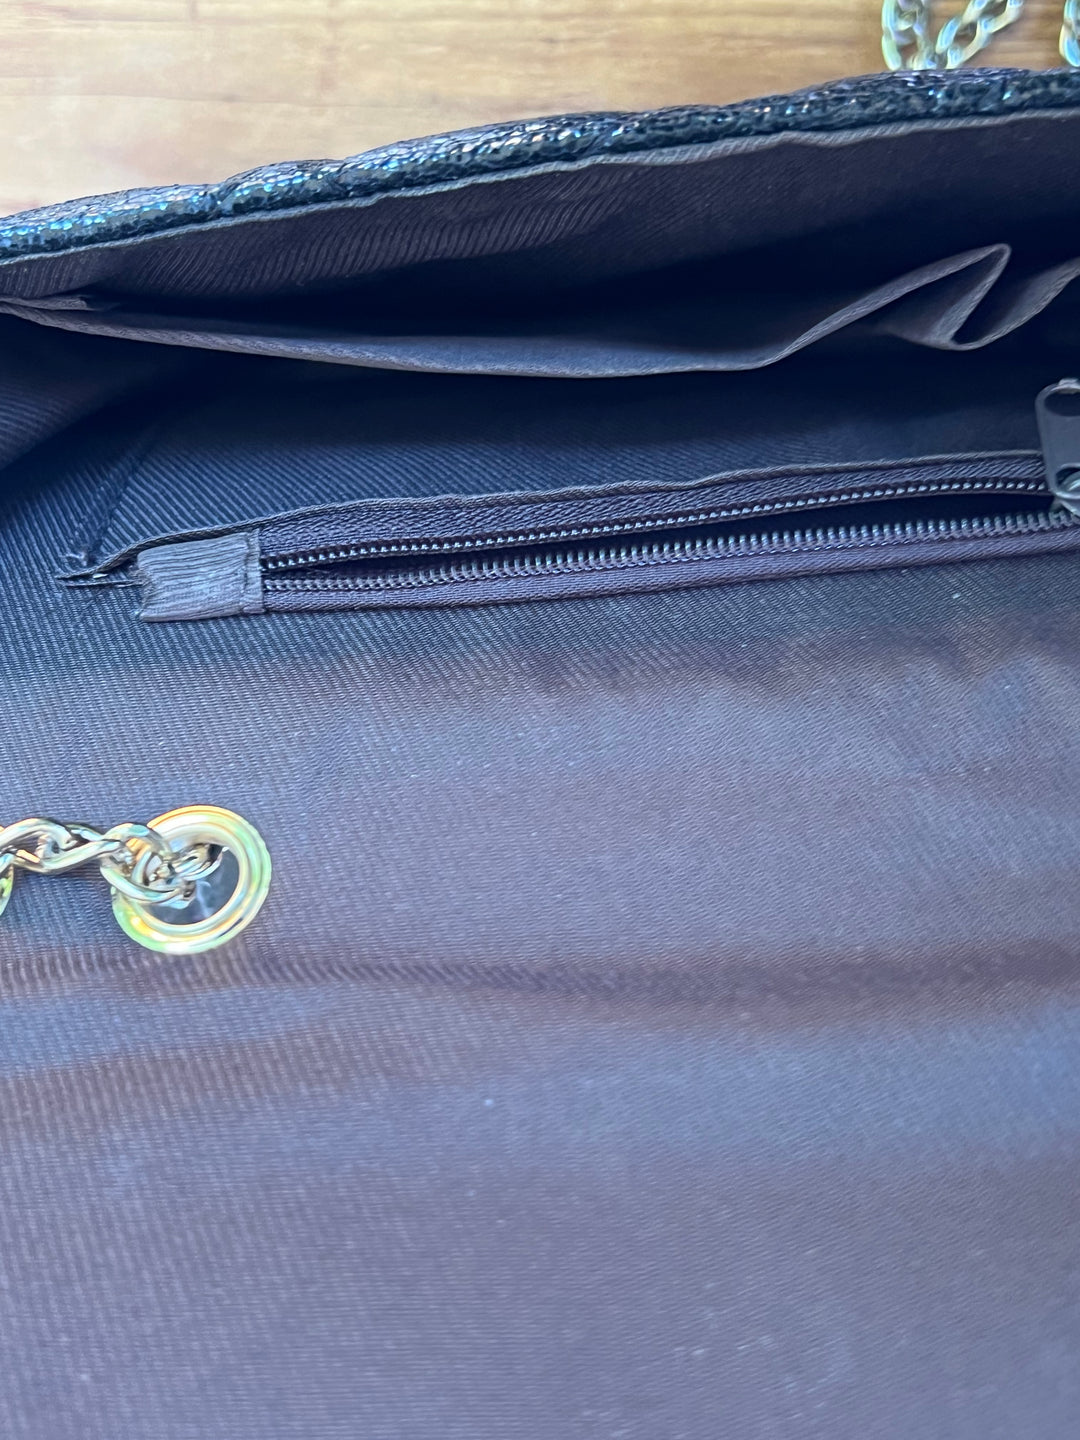 Foil Shimmer Foldover Crossbody Shoulder Bag with Gold Chain